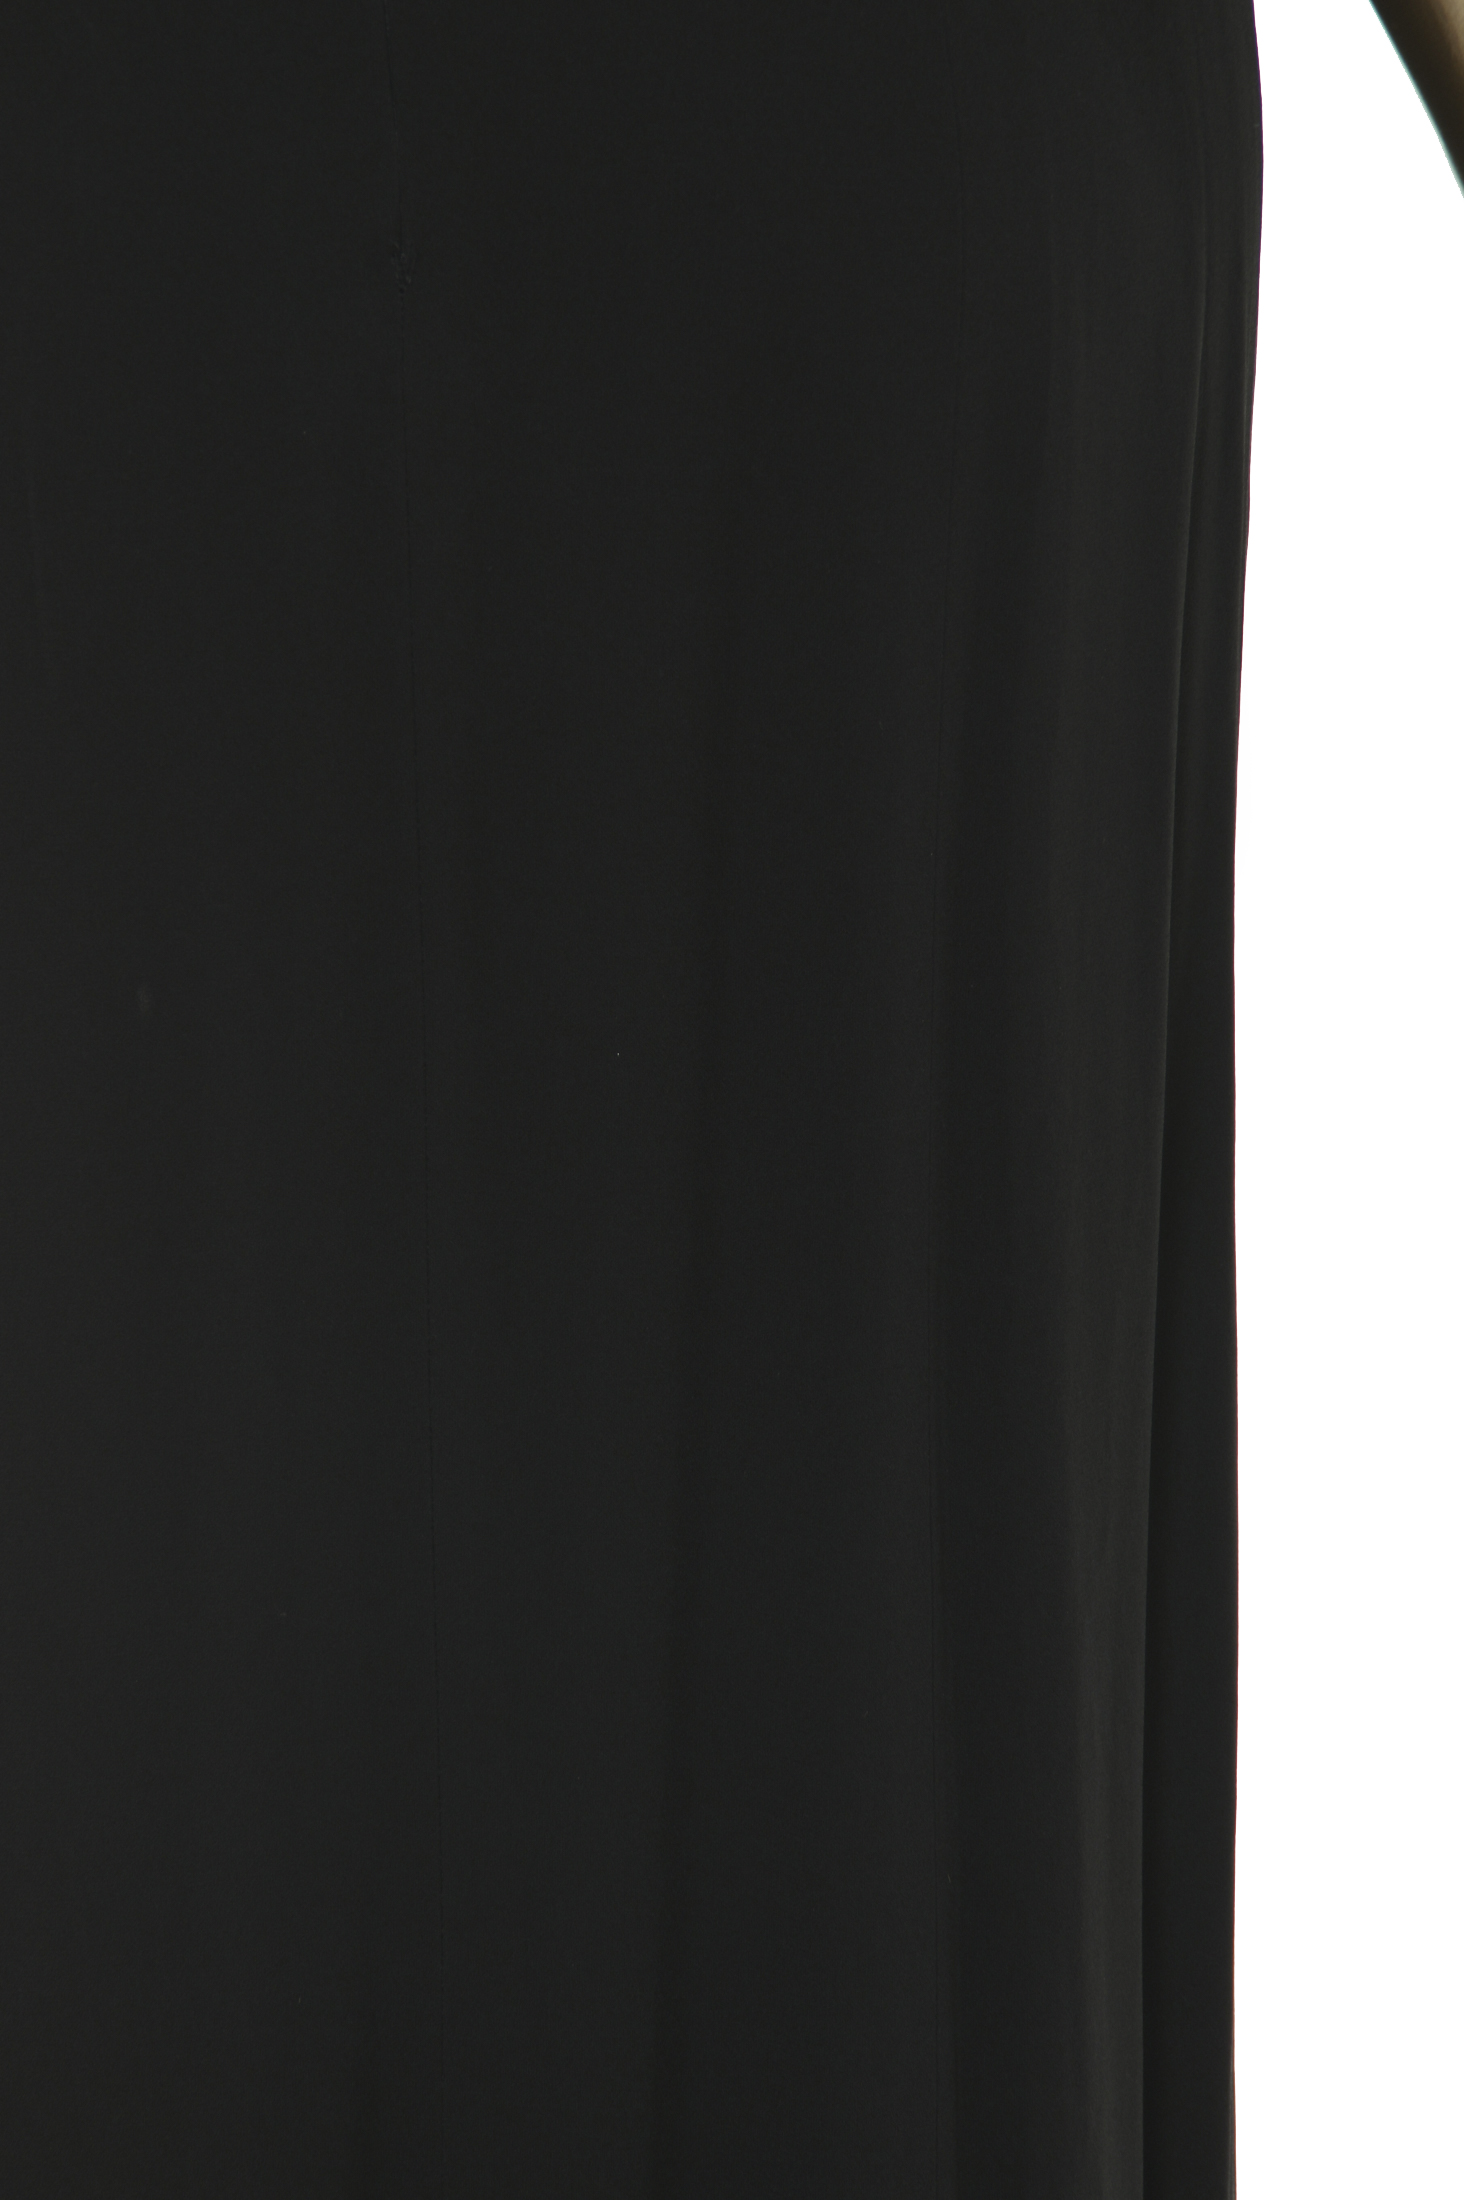 Givenchy Embellished Strap Long Dress - Janet Mandell